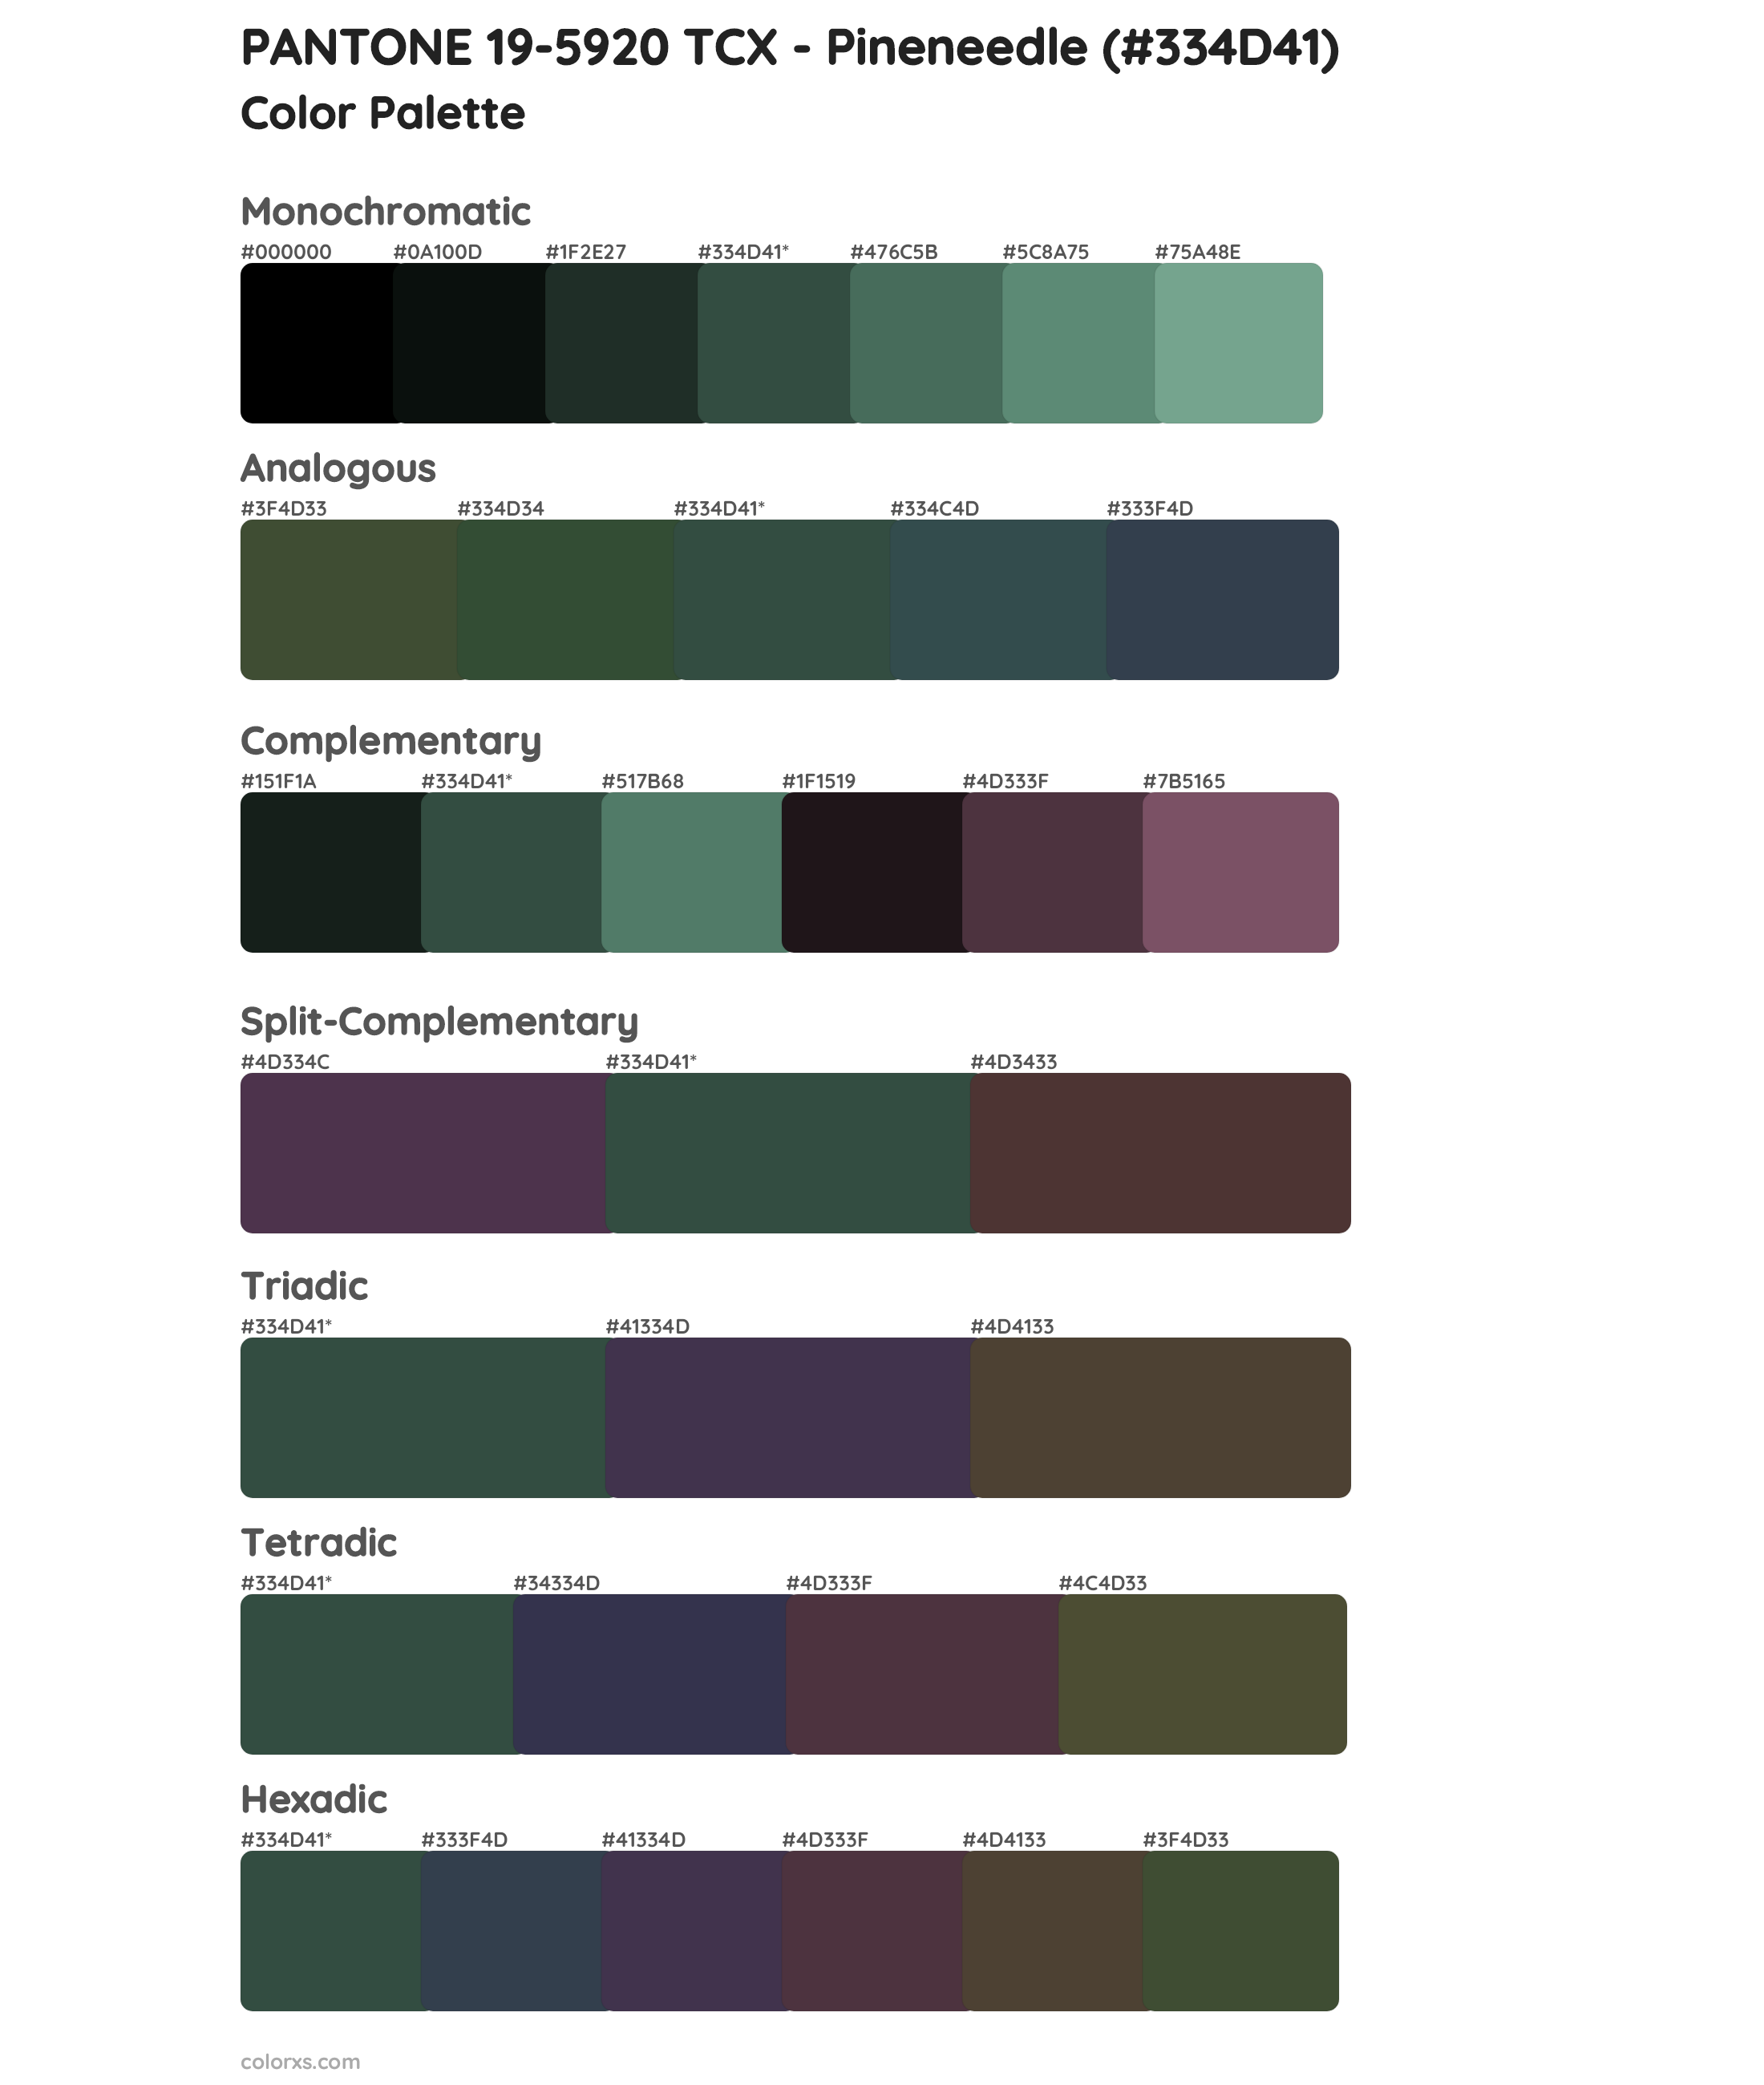 PANTONE 19-5920 TCX - Pineneedle Color Scheme Palettes